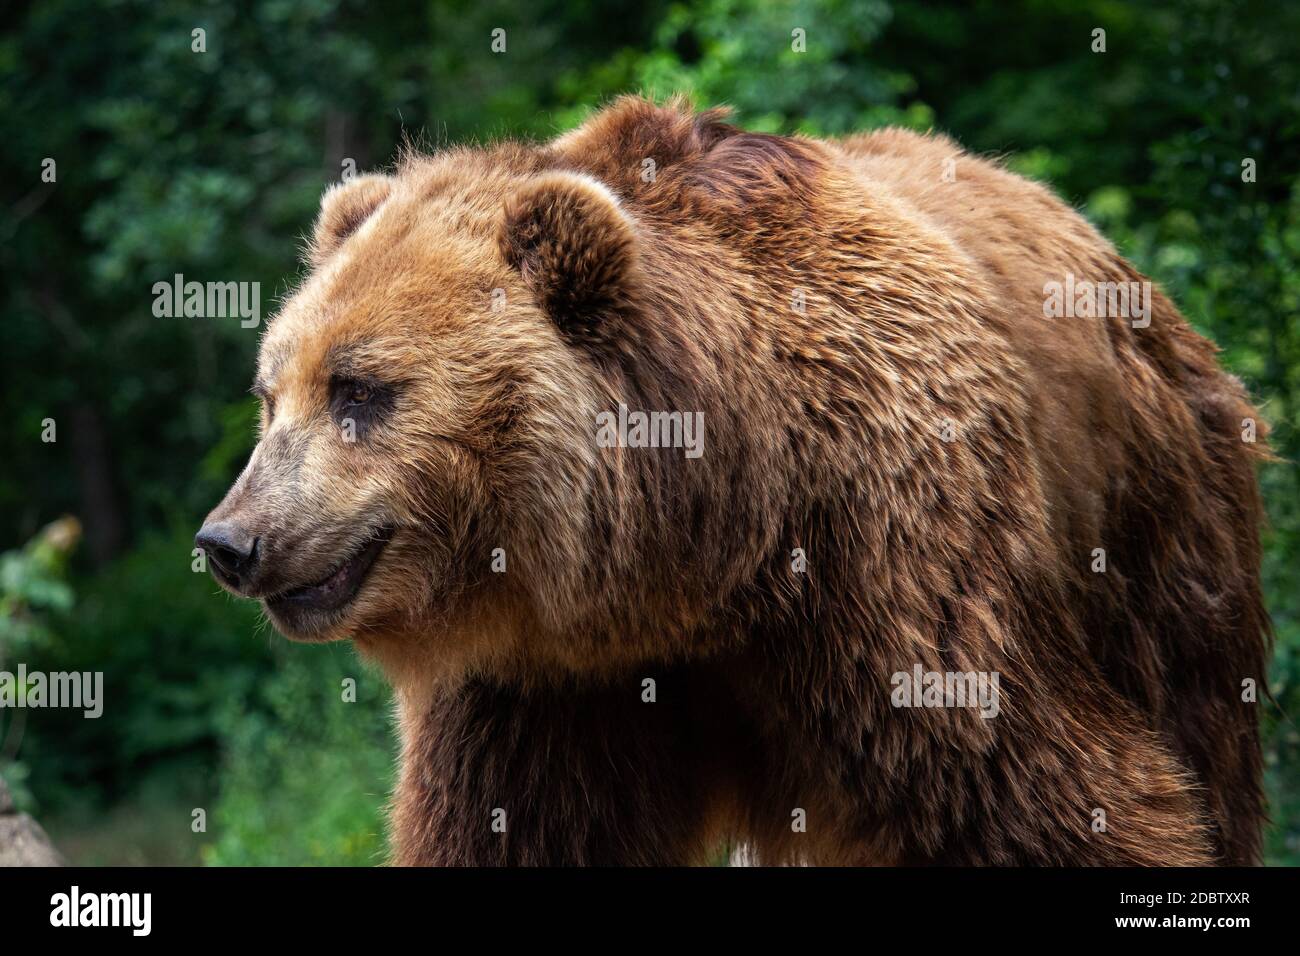 Kamchatka Brown bear (Ursus arctos beringianus). Brown fur coat, danger and aggresive animal. Big mammal from Russia. Stock Photo